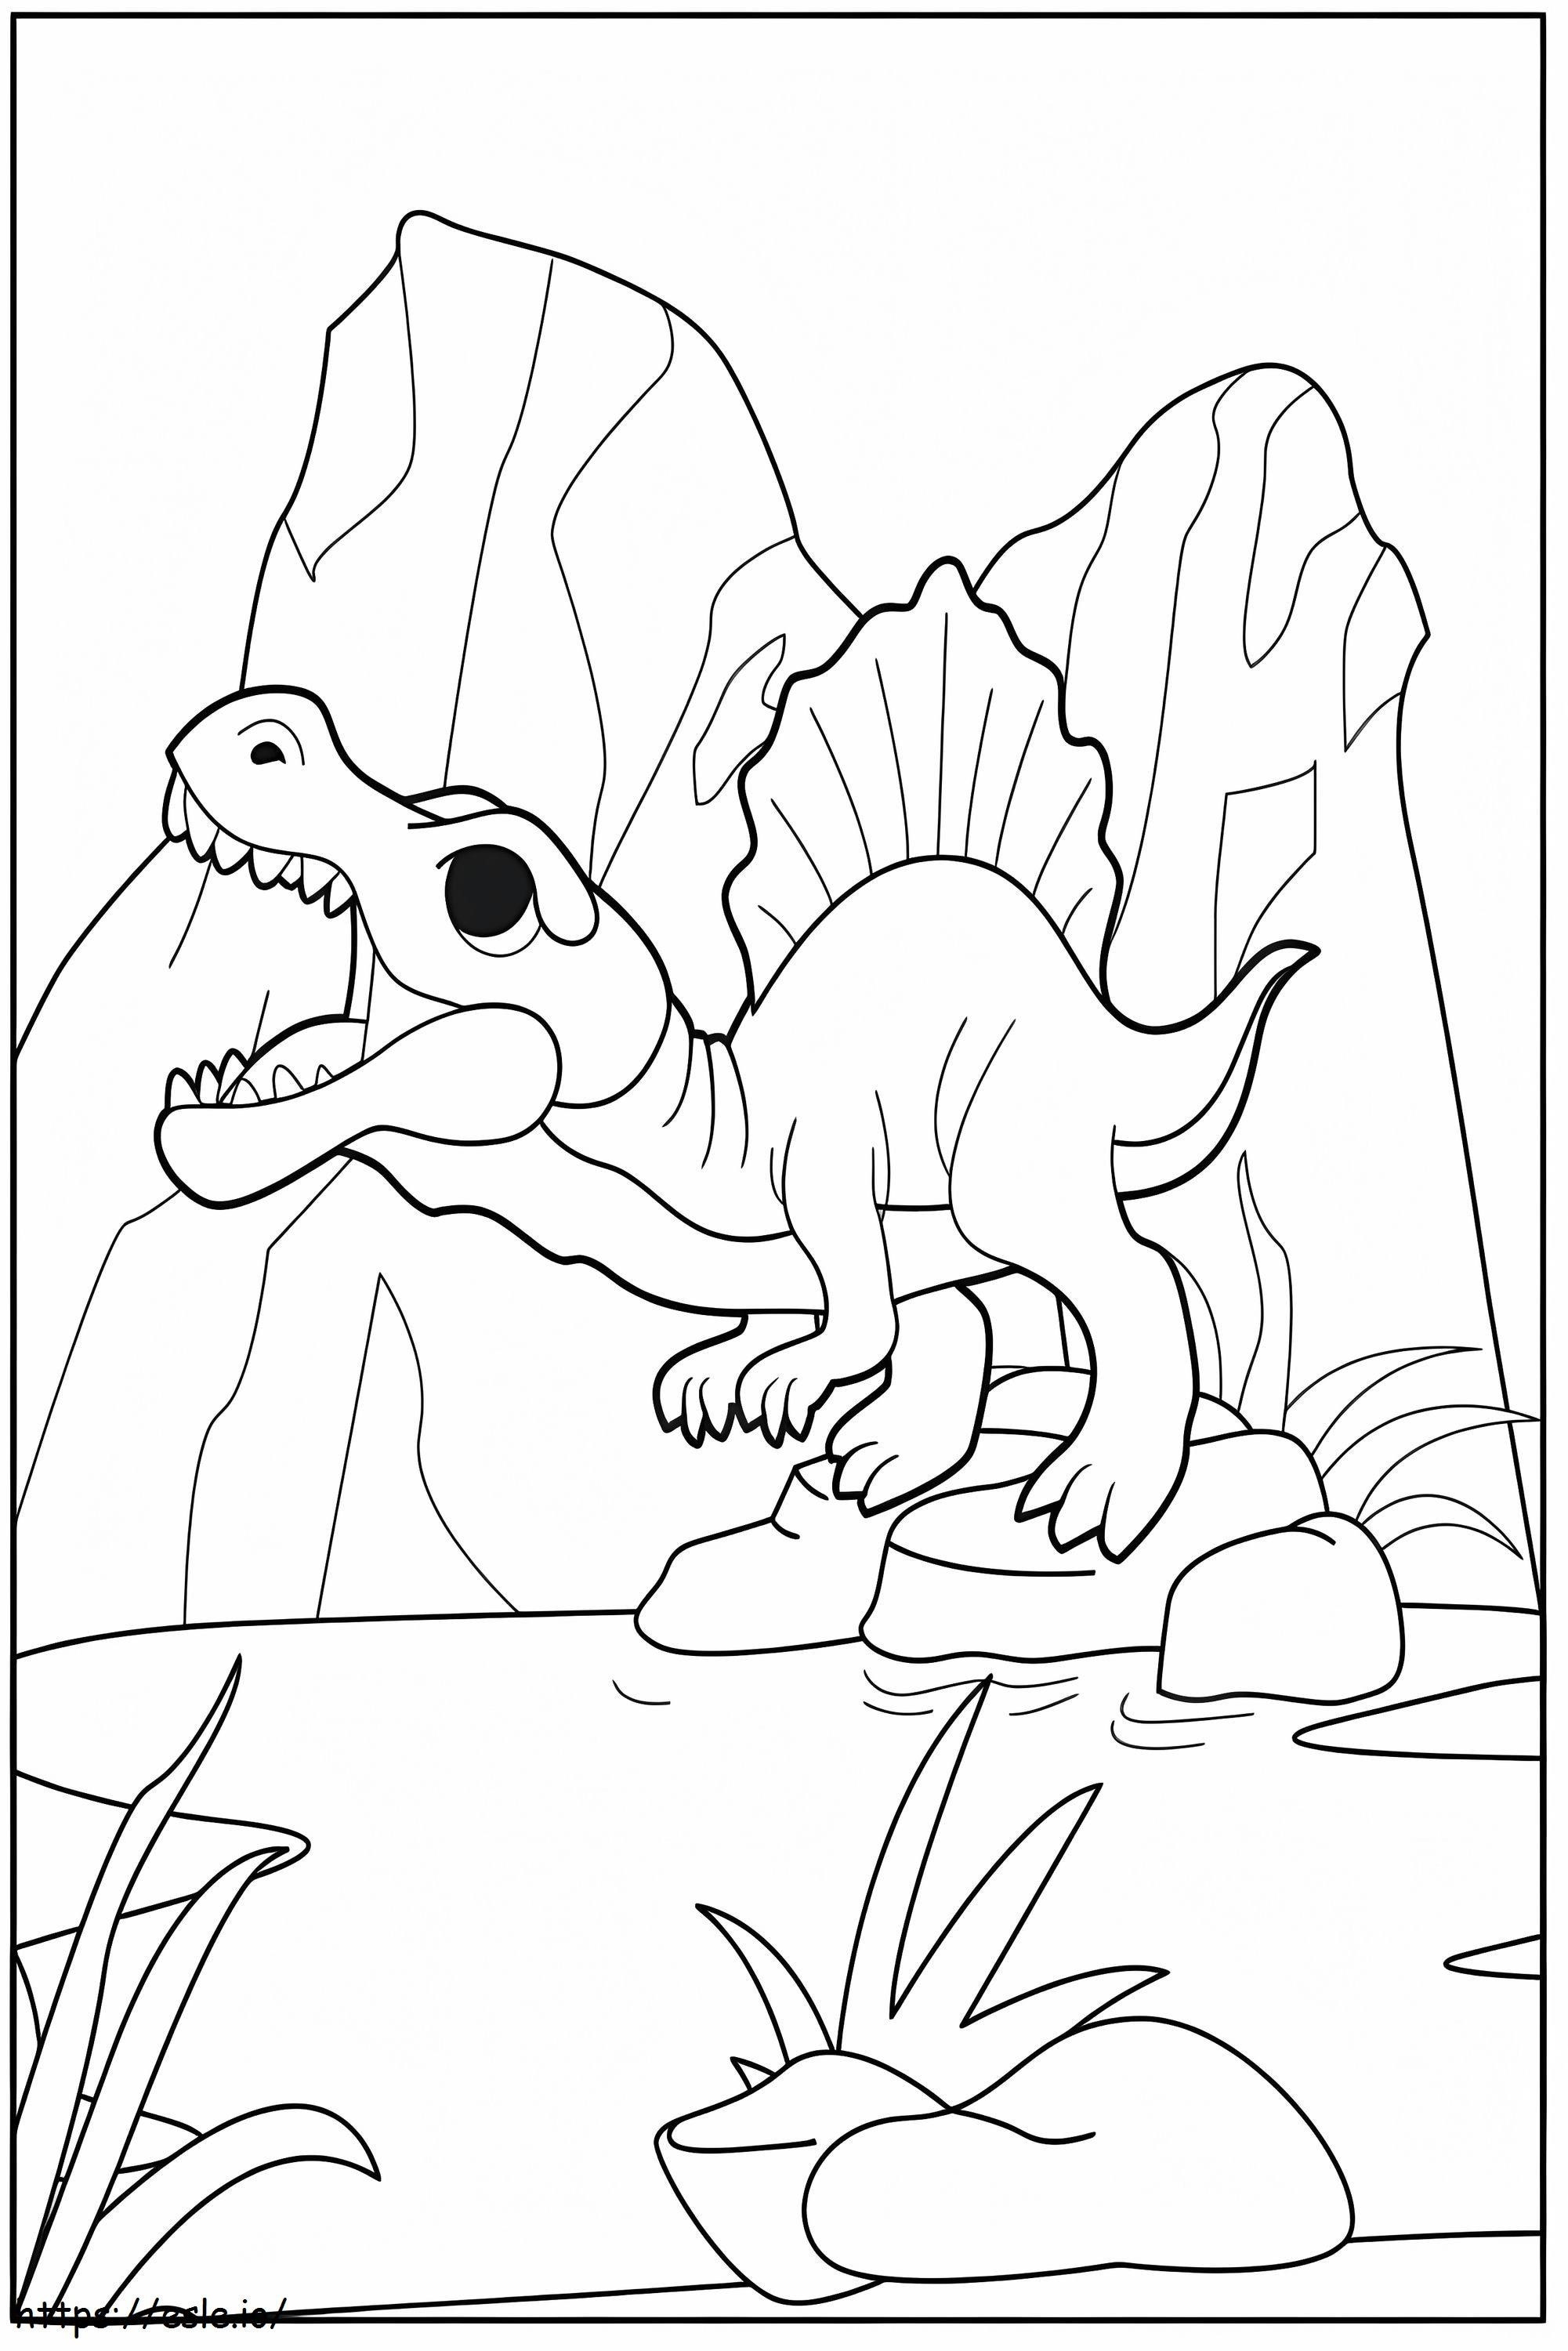 Coloriage Adorable Spinosaure à imprimer dessin